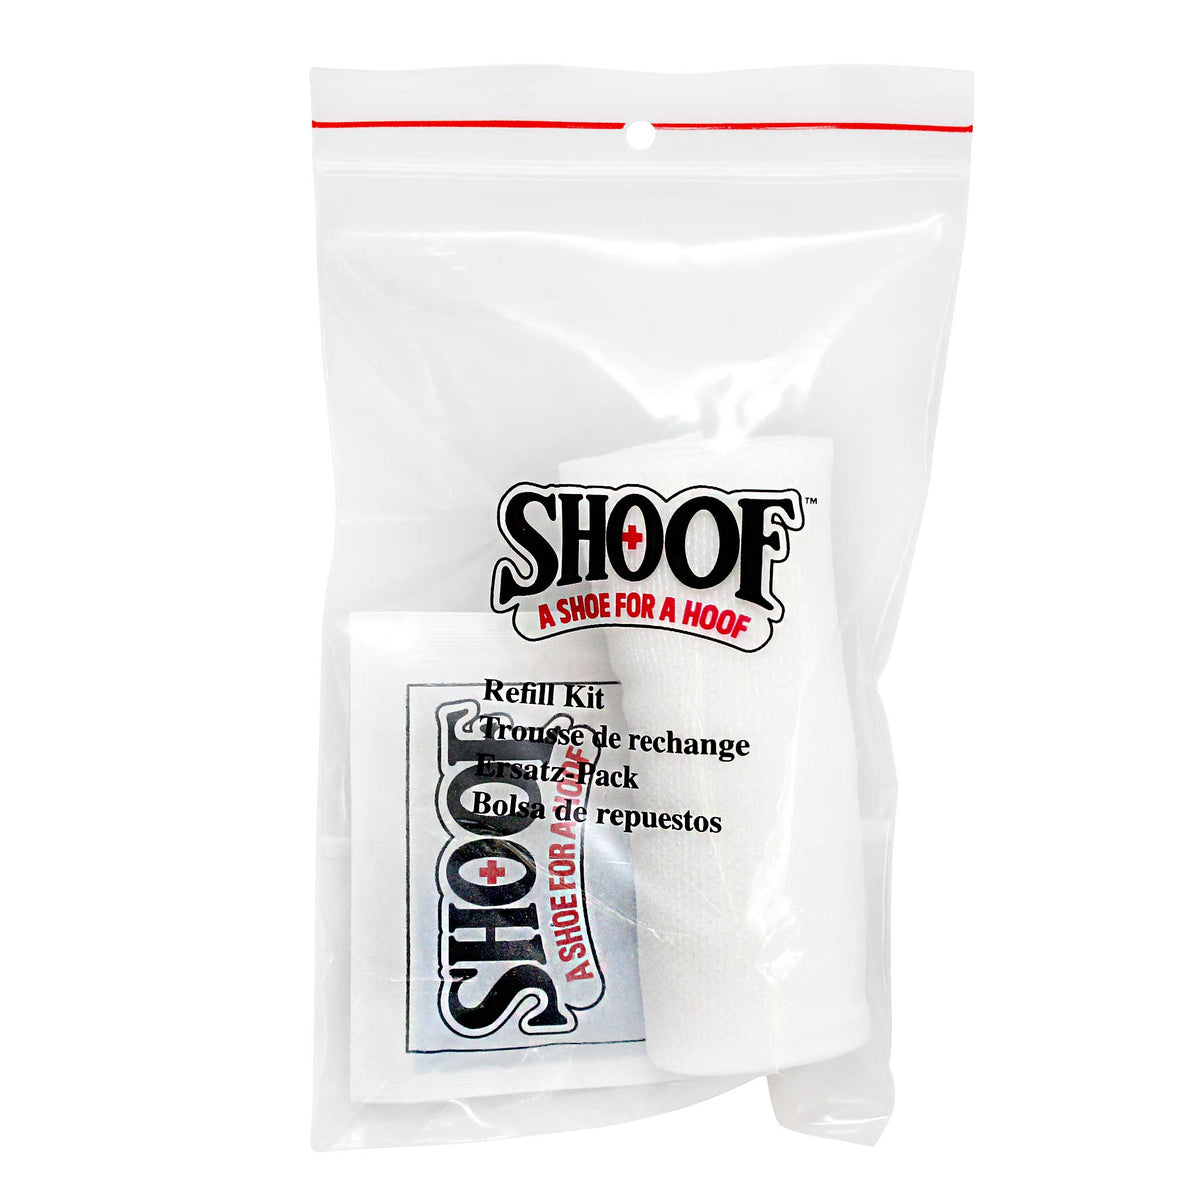 Horse Shoof Refill Kit